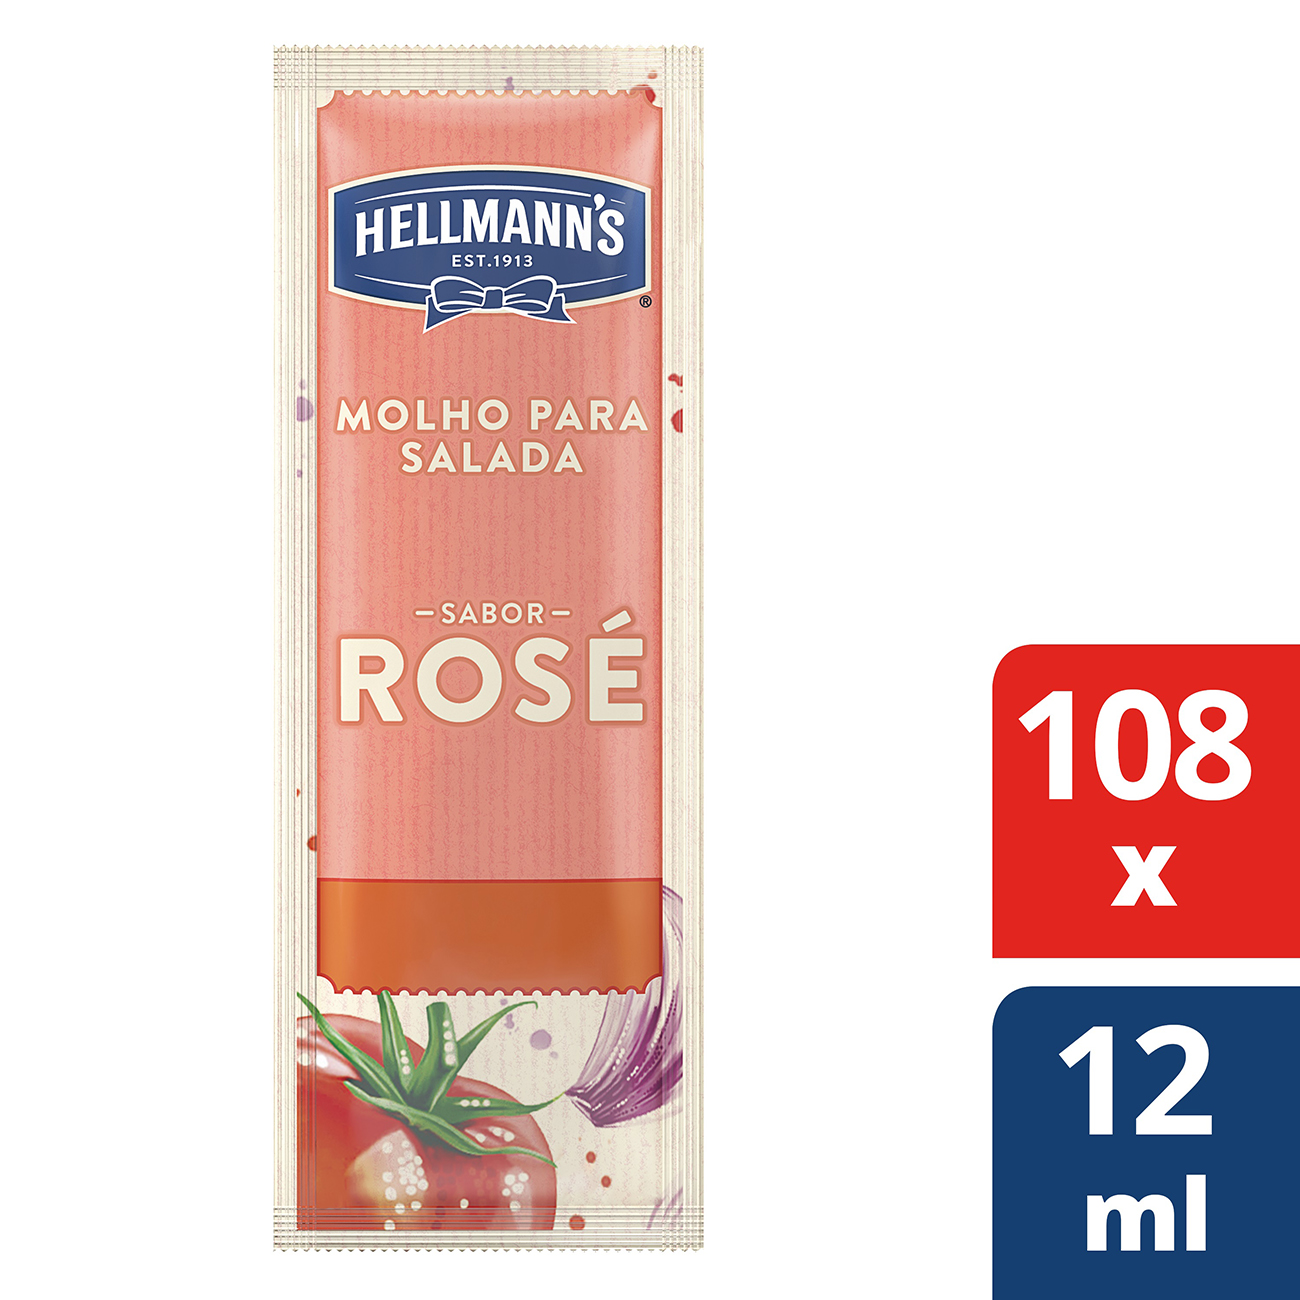 Molho Para Salada Hellmann's Ros� 12ml | Com 108 sach�s